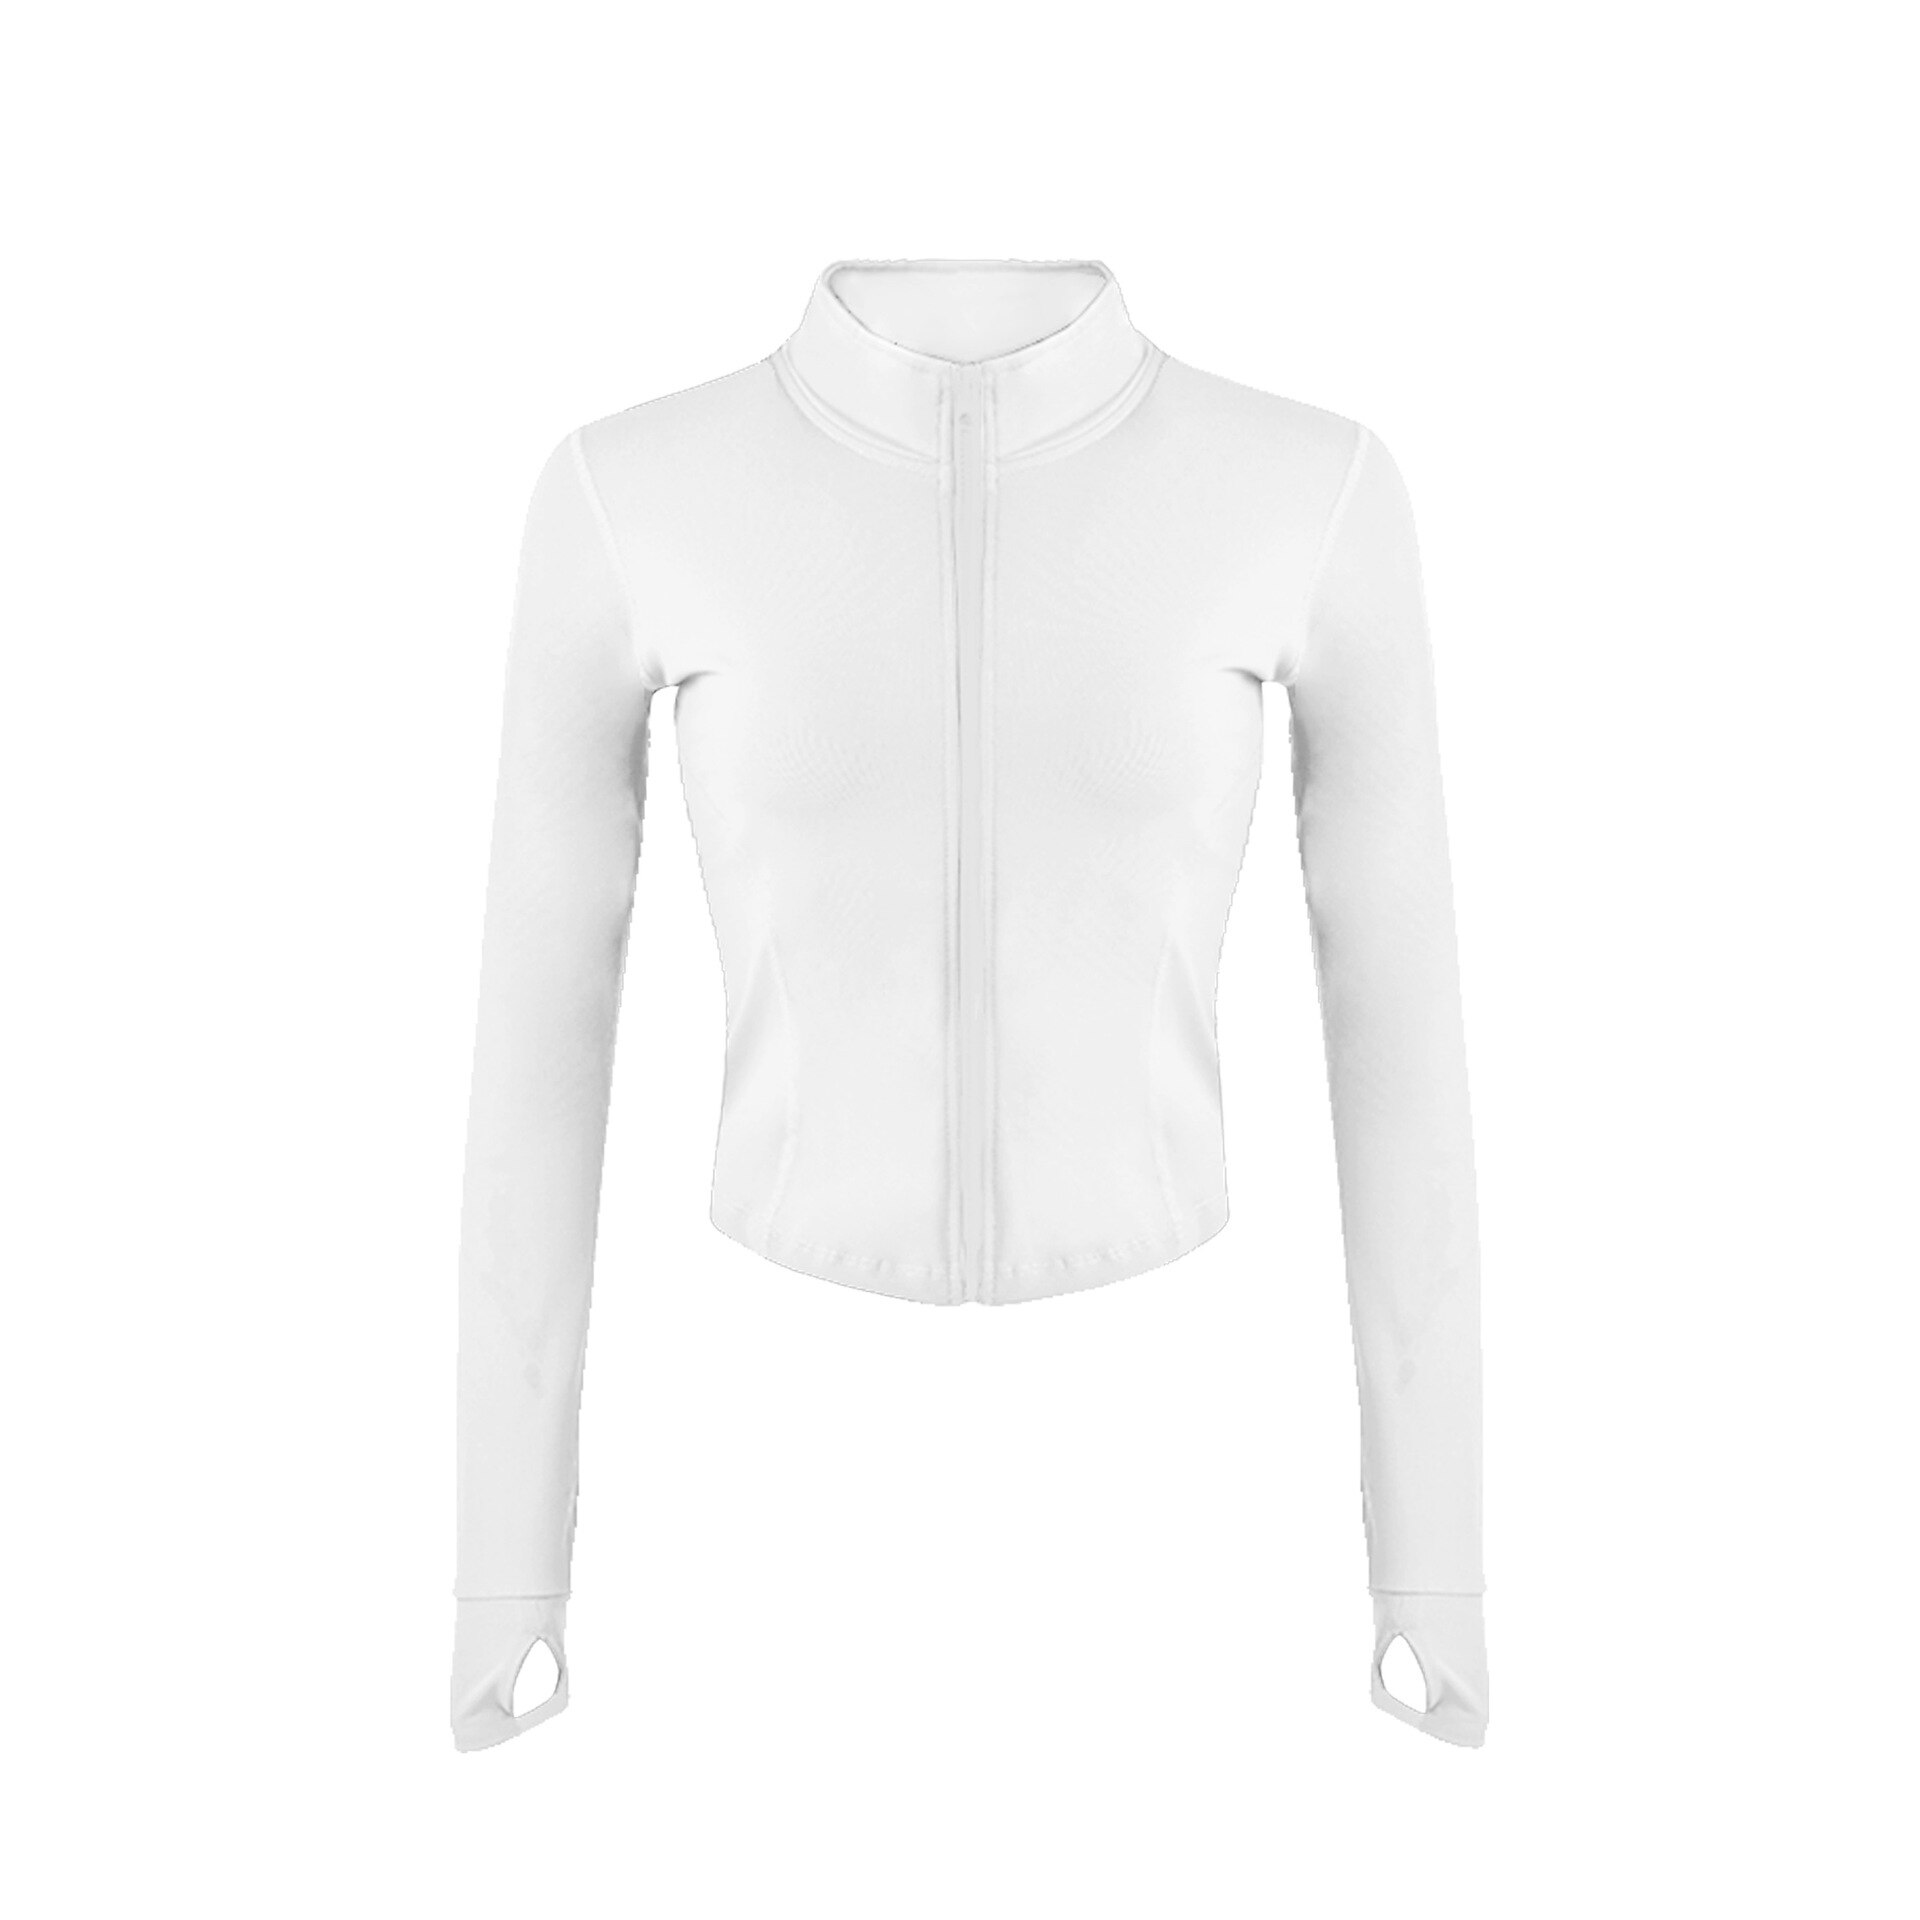 Inspk kvinder sportsfrakke langærmet rene farver slim sport løb fitness tøj pige hurtigtørrende jakke stil: S / Hvid